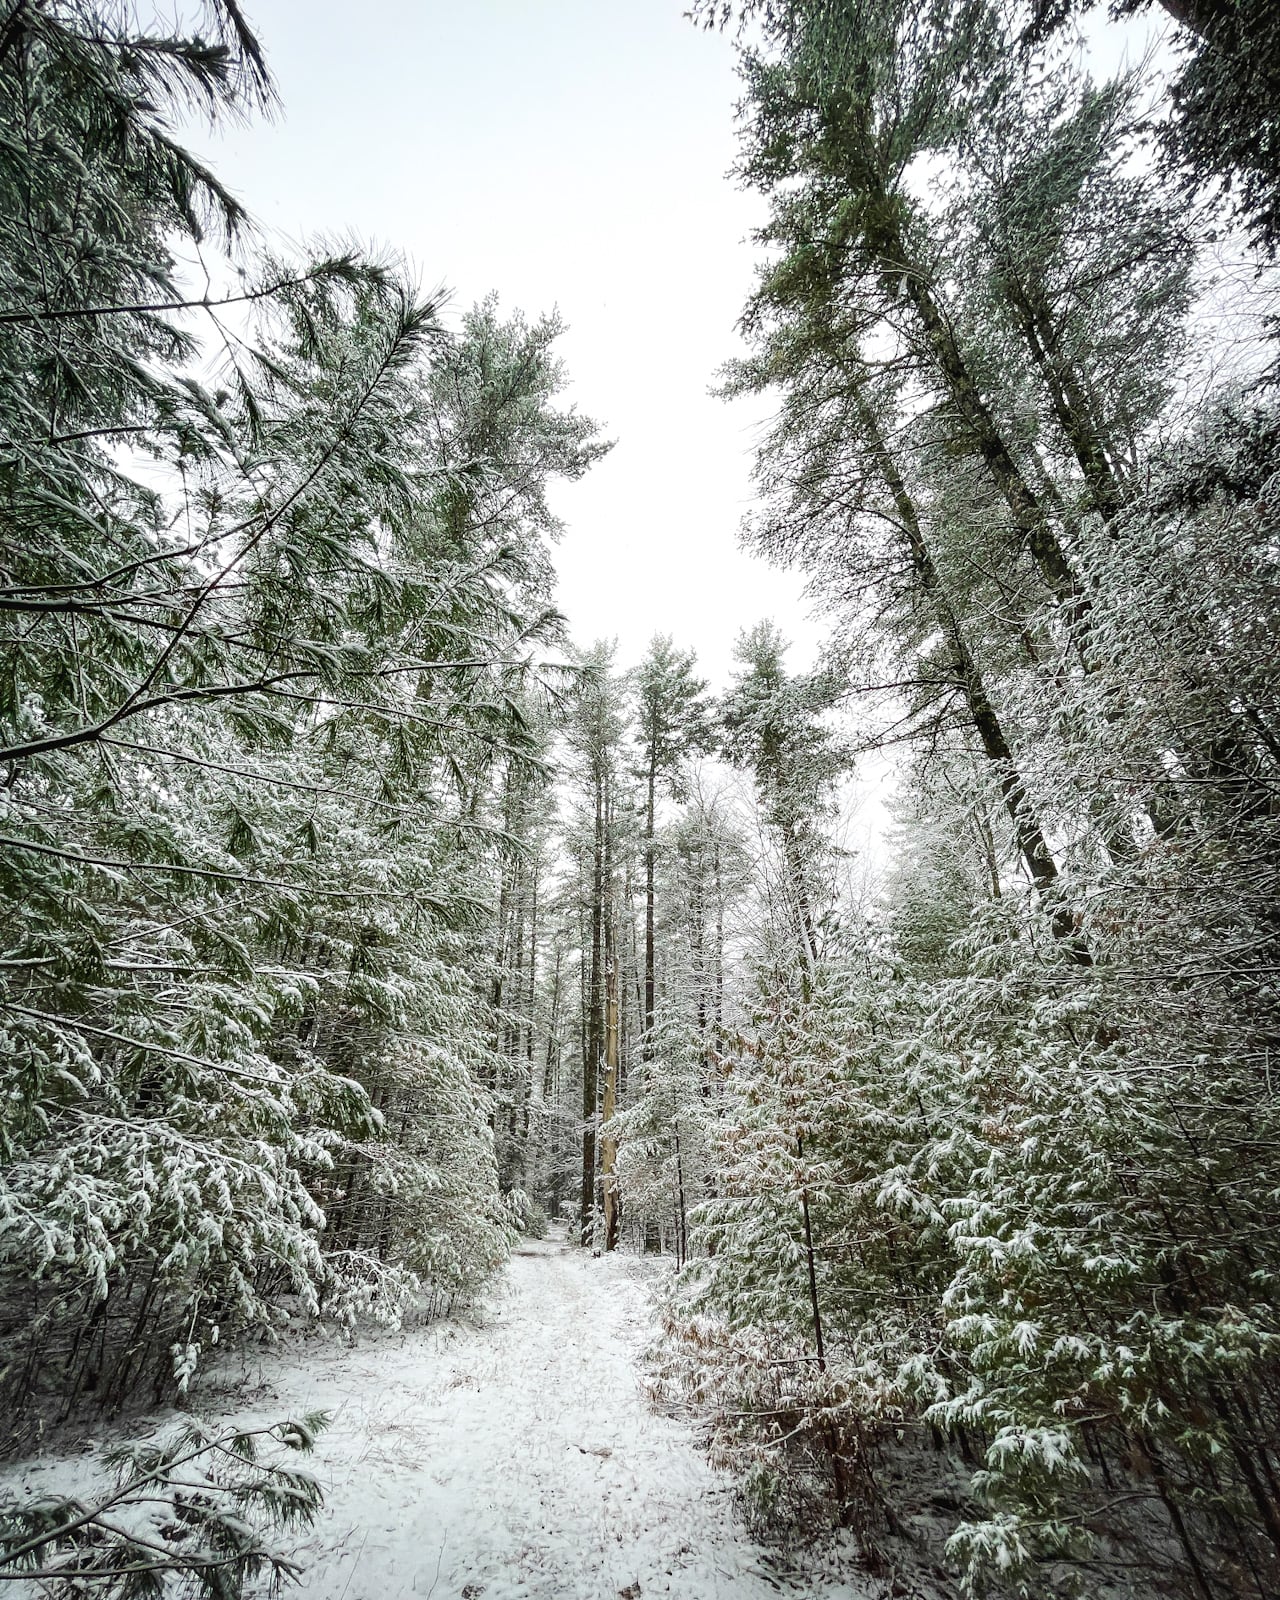 best hikes near woodstock ny: Israel Wittman pine trees